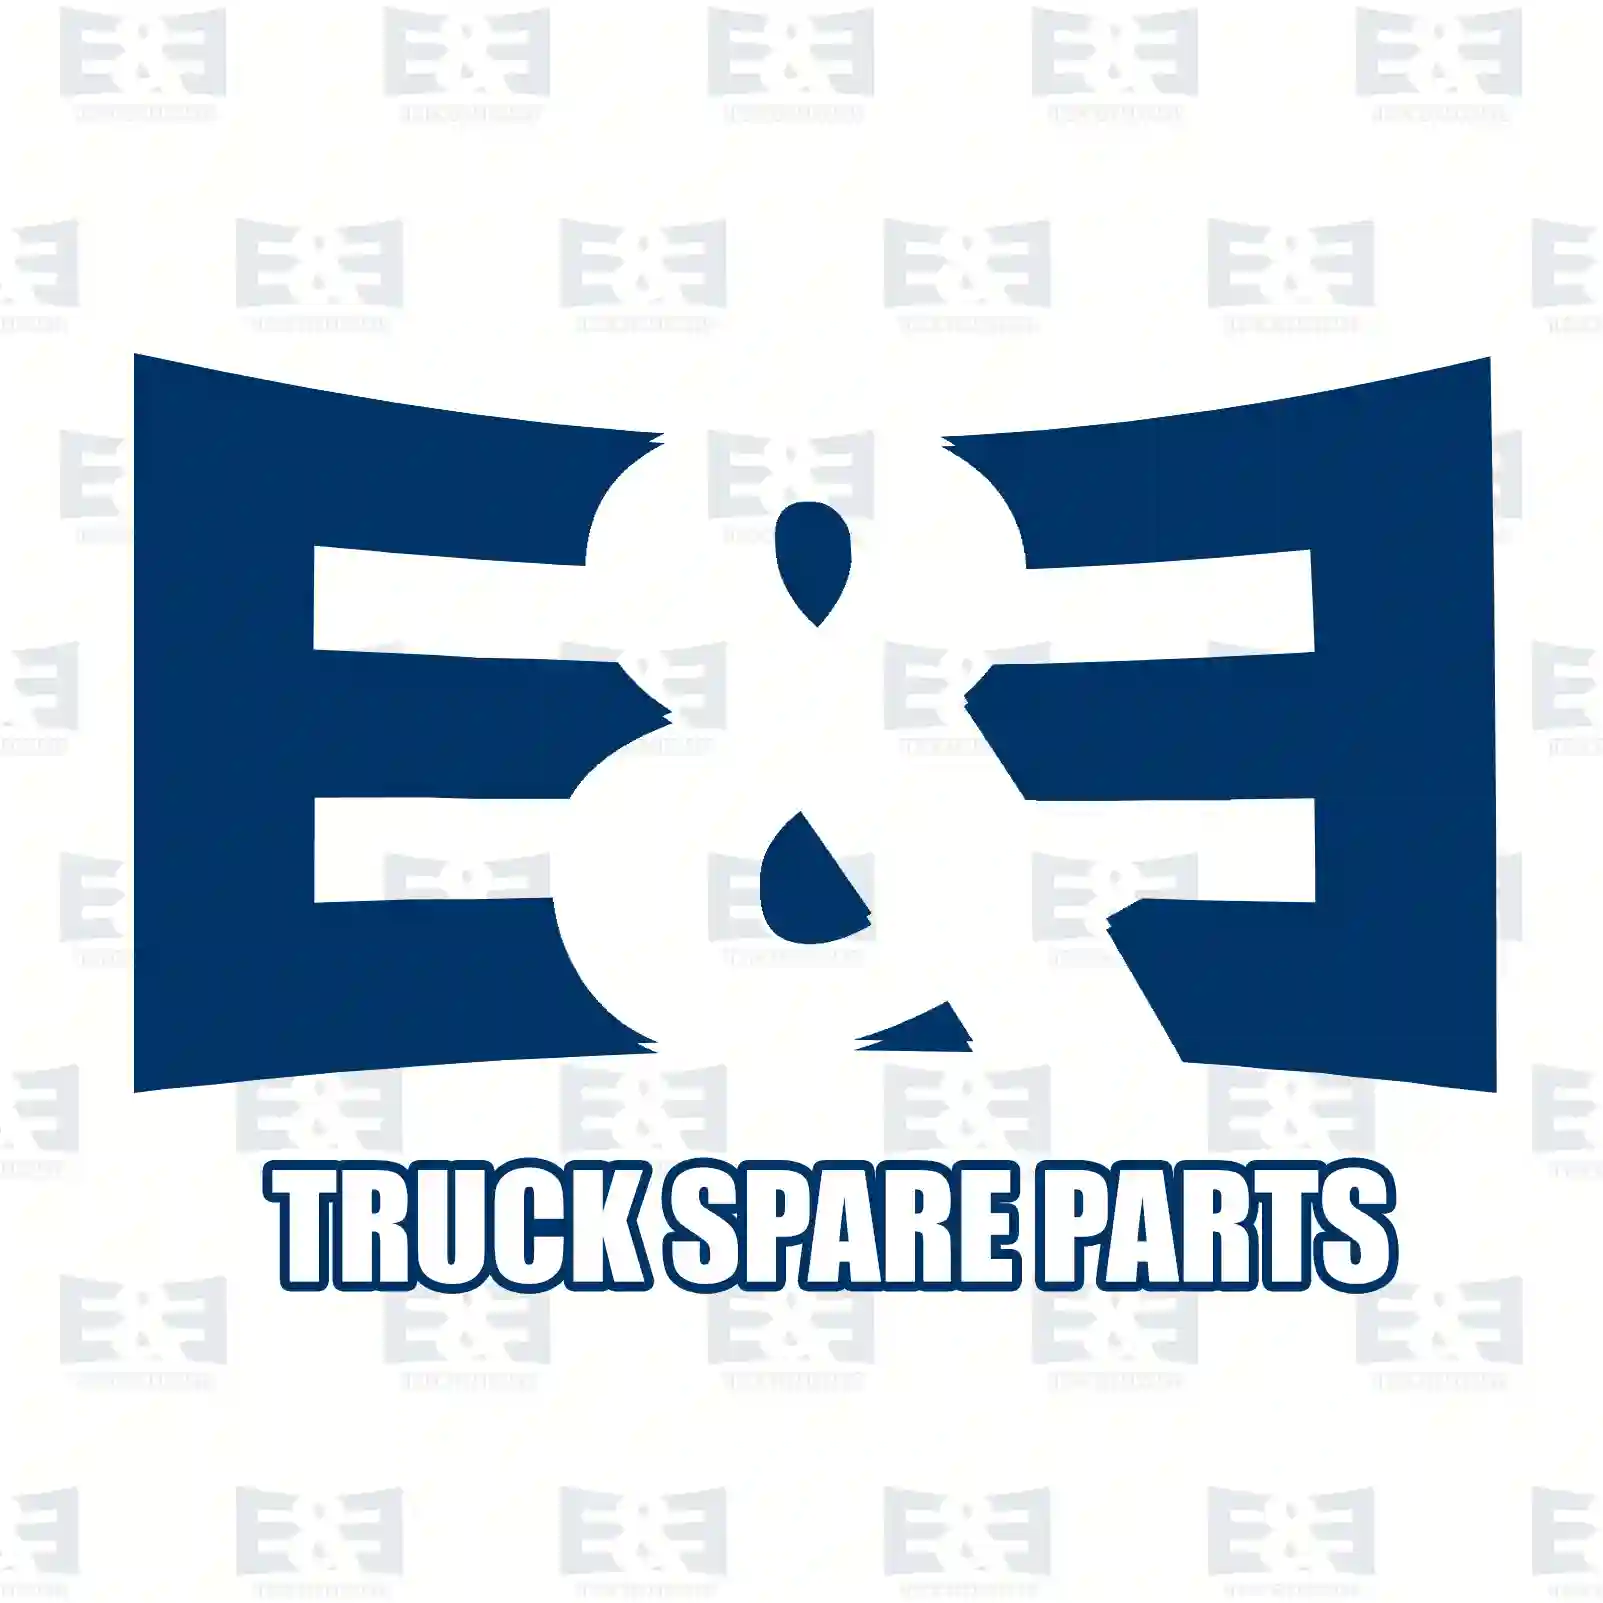 Belt tensioner kit, 2E2201547, 7420739751S1, 7420935521S1, 7421422765S1, 7421479276S1, 7421422765, 20739751S1, 20935521S1, 21422765S1, 21461221S1, 21479276S1 ||  2E2201547 E&E Truck Spare Parts | Truck Spare Parts, Auotomotive Spare Parts Belt tensioner kit, 2E2201547, 7420739751S1, 7420935521S1, 7421422765S1, 7421479276S1, 7421422765, 20739751S1, 20935521S1, 21422765S1, 21461221S1, 21479276S1 ||  2E2201547 E&E Truck Spare Parts | Truck Spare Parts, Auotomotive Spare Parts